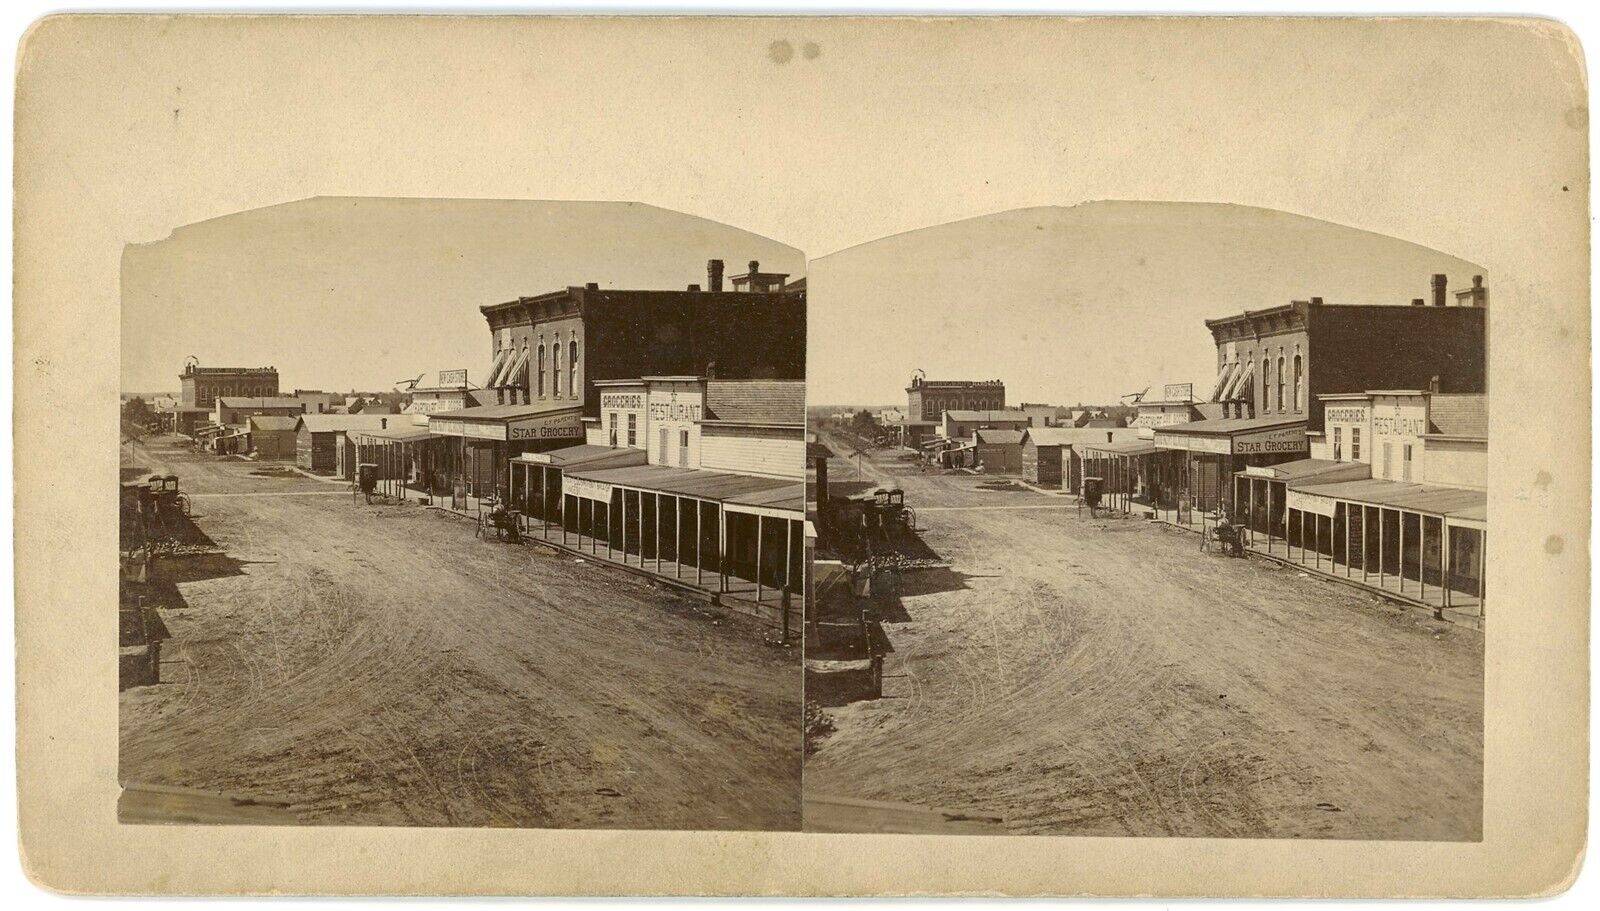 KANSAS SV - Abilene - Street Scene - 1880s/90s VERY RARE